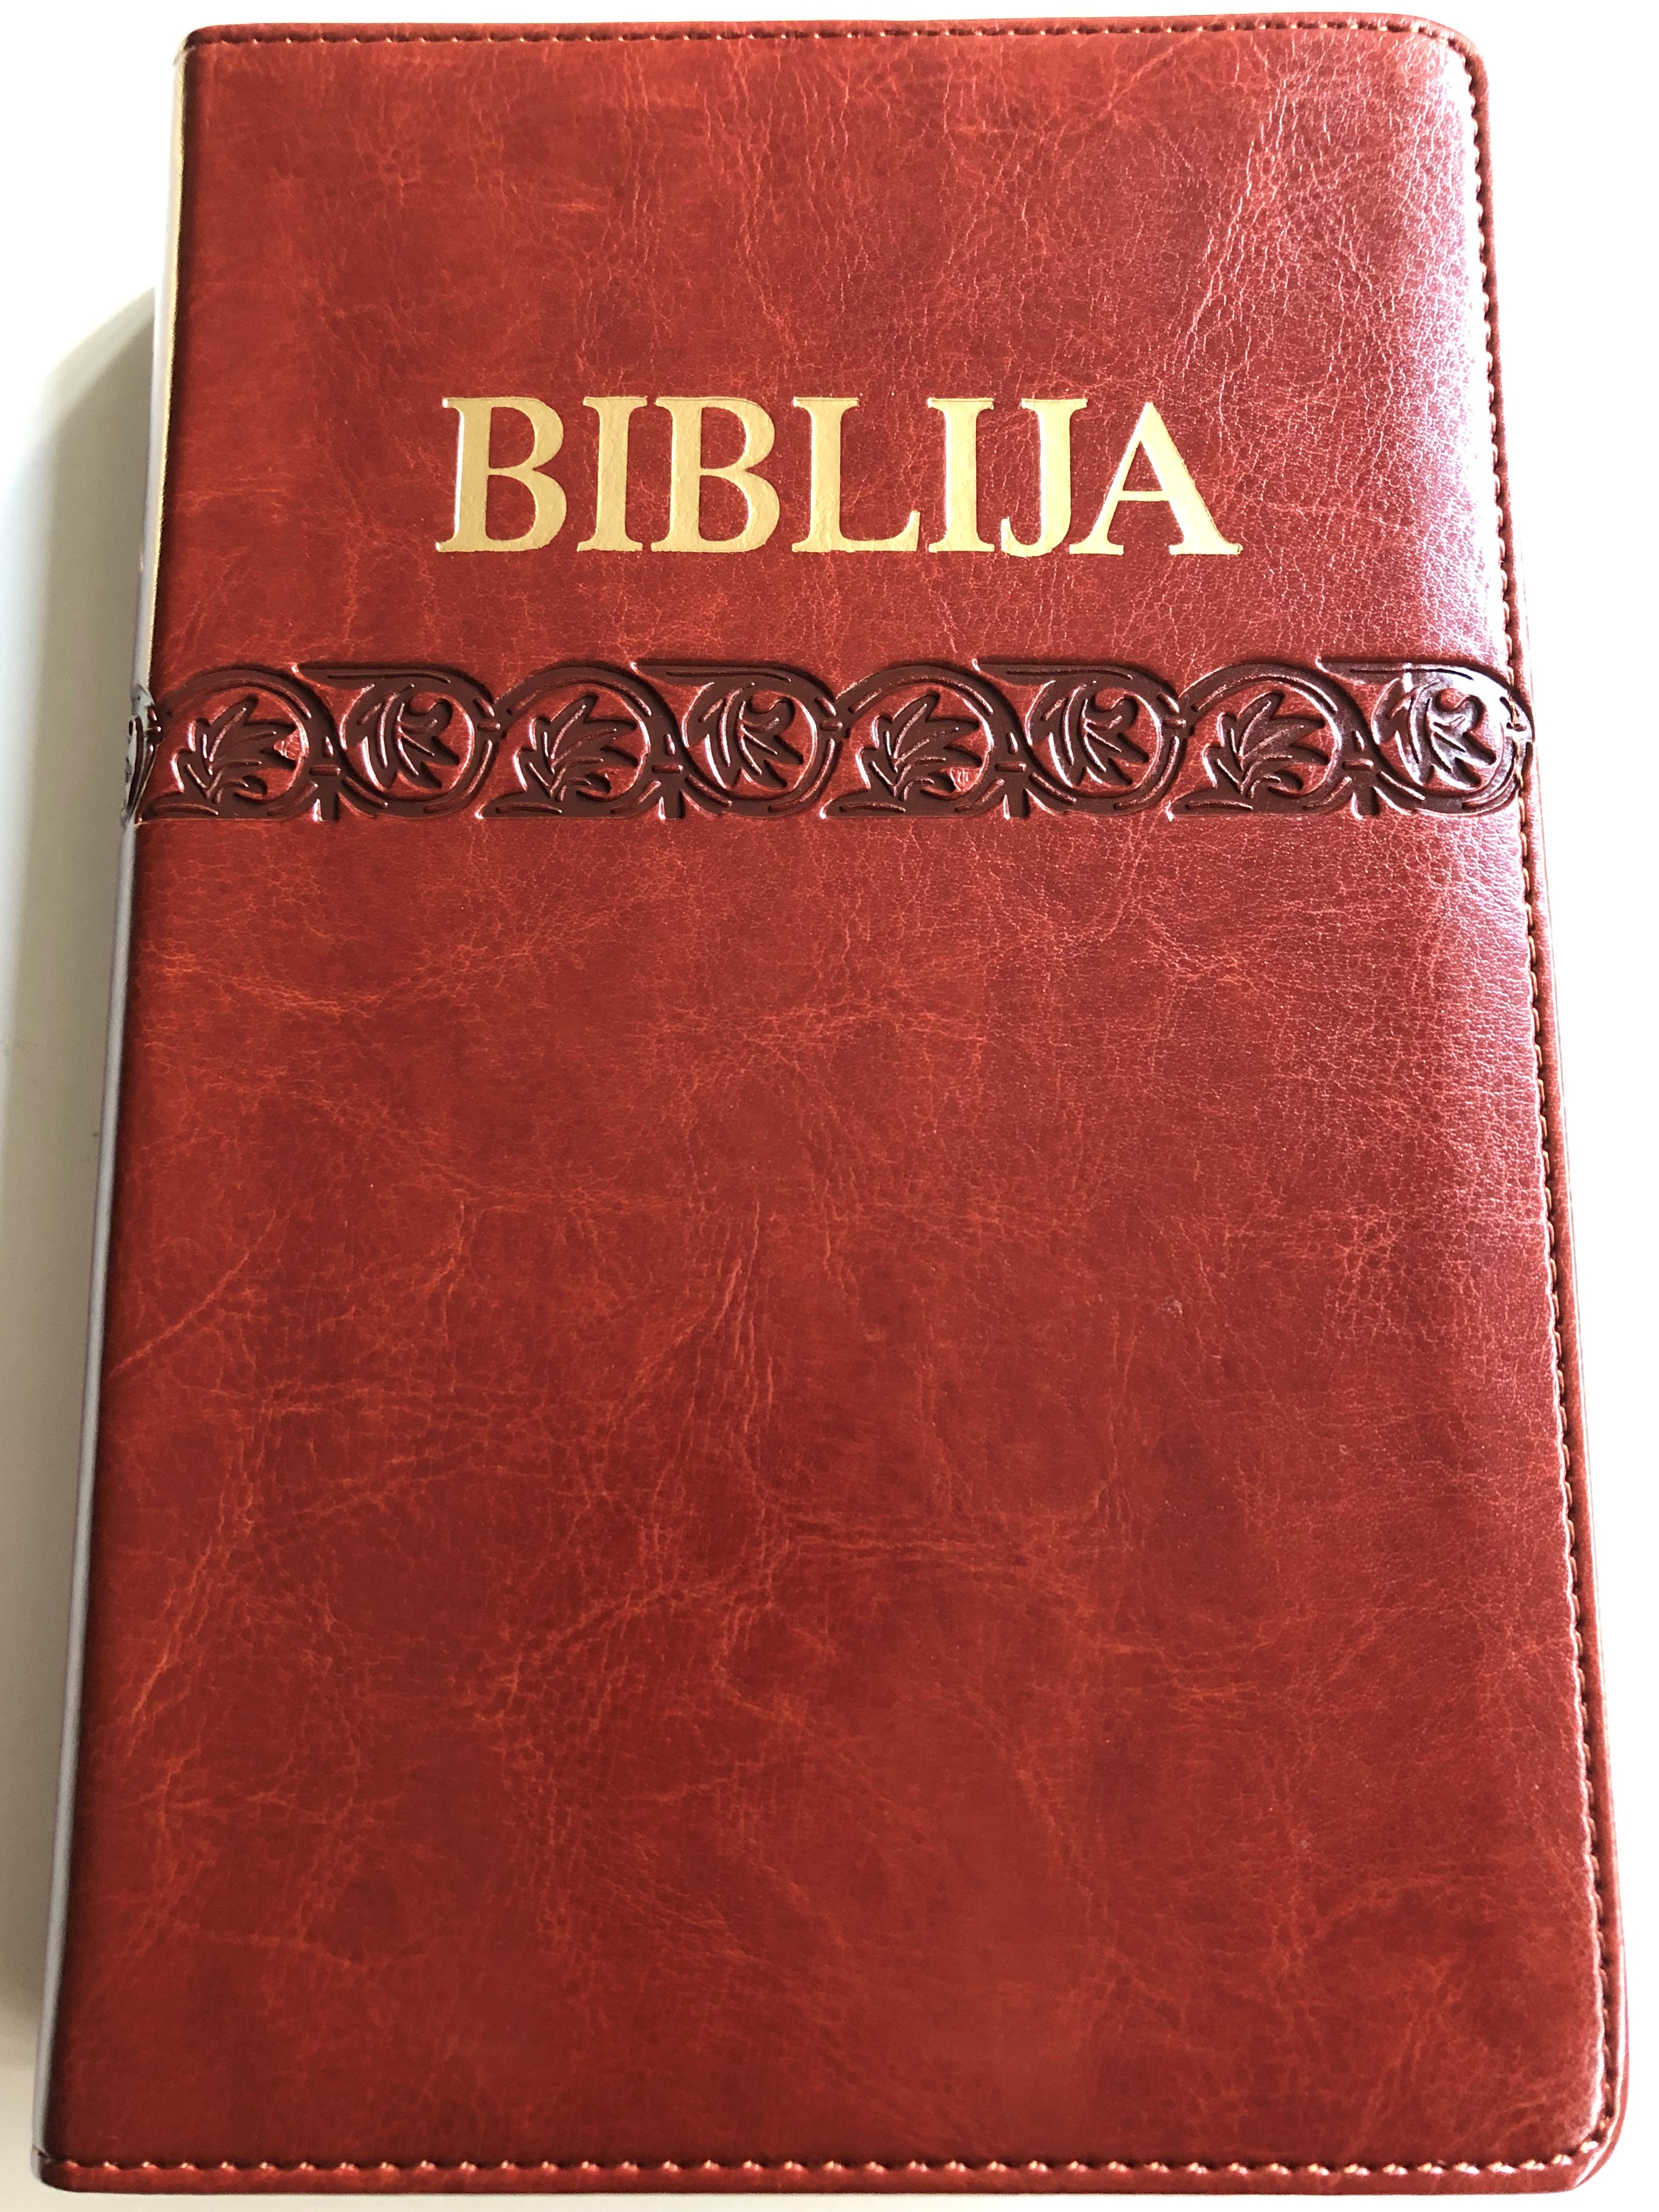 biblija-sveto-pismo-staroga-i-novoga-zavjeta-brown-croatian-language-leather-bound-holy-bible-1.jpg